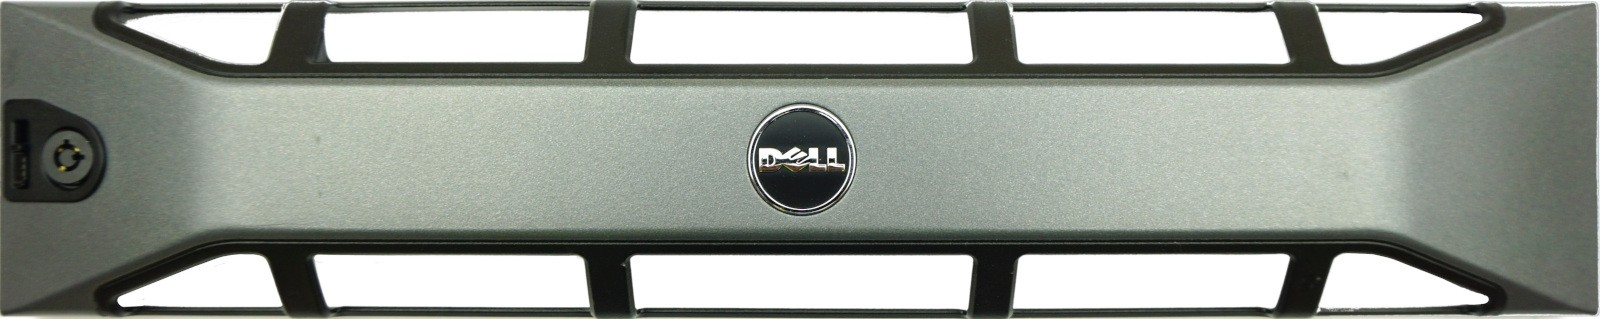 Dell PowerEdge R710, R715, R810, R815 Front Bezel No Key